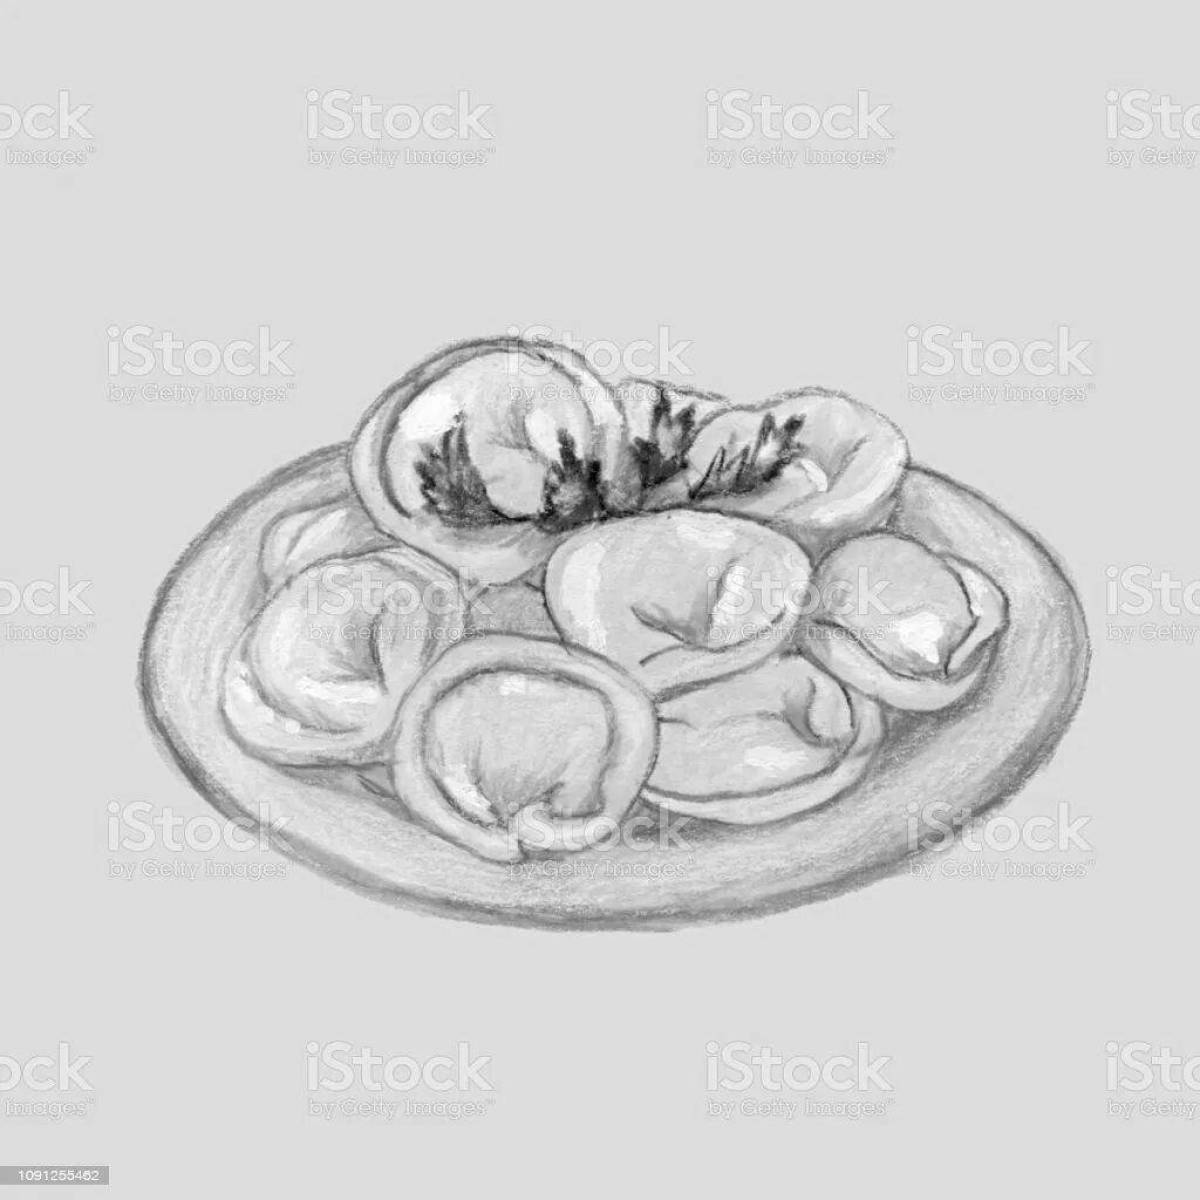 Spicy dumplings in a bowl